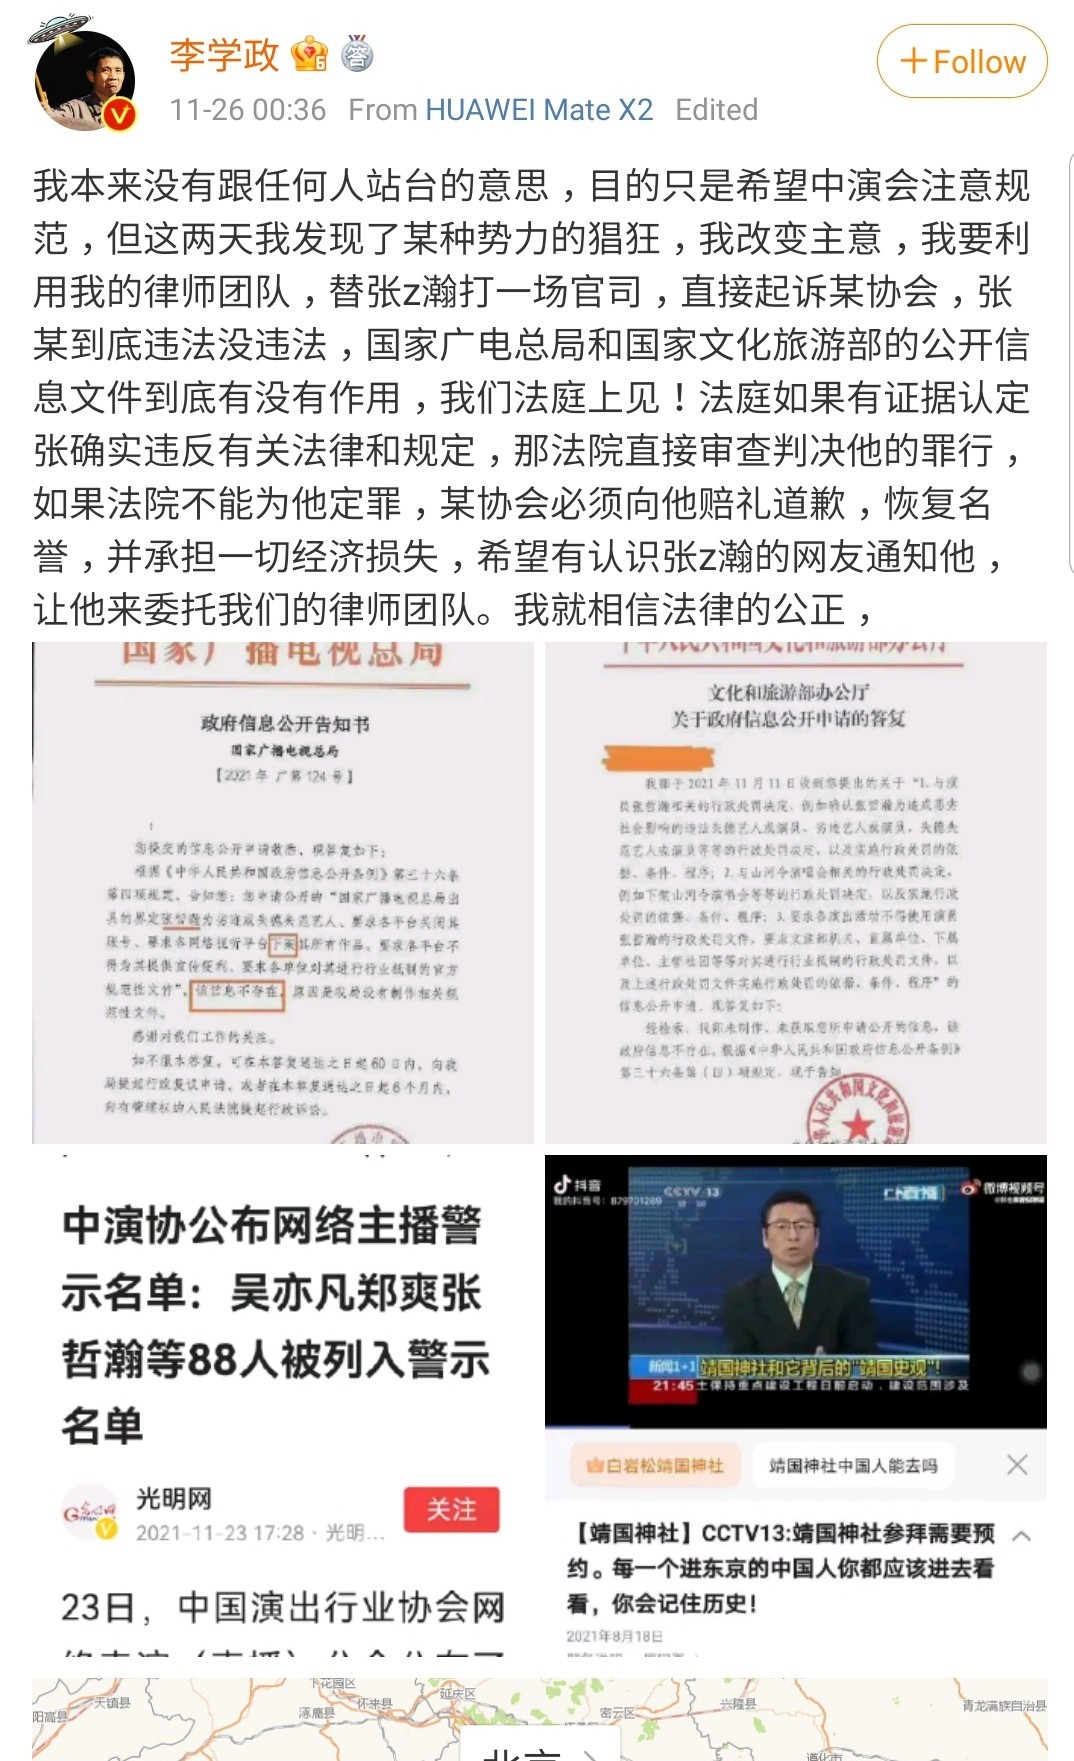 Nhà sản xuất phim Lý Học Chính lên tiếng đòi công bằng cho Trương Triết Hạn - đối đầu với phía Hiệp hội diễn xuất Trung Quốc